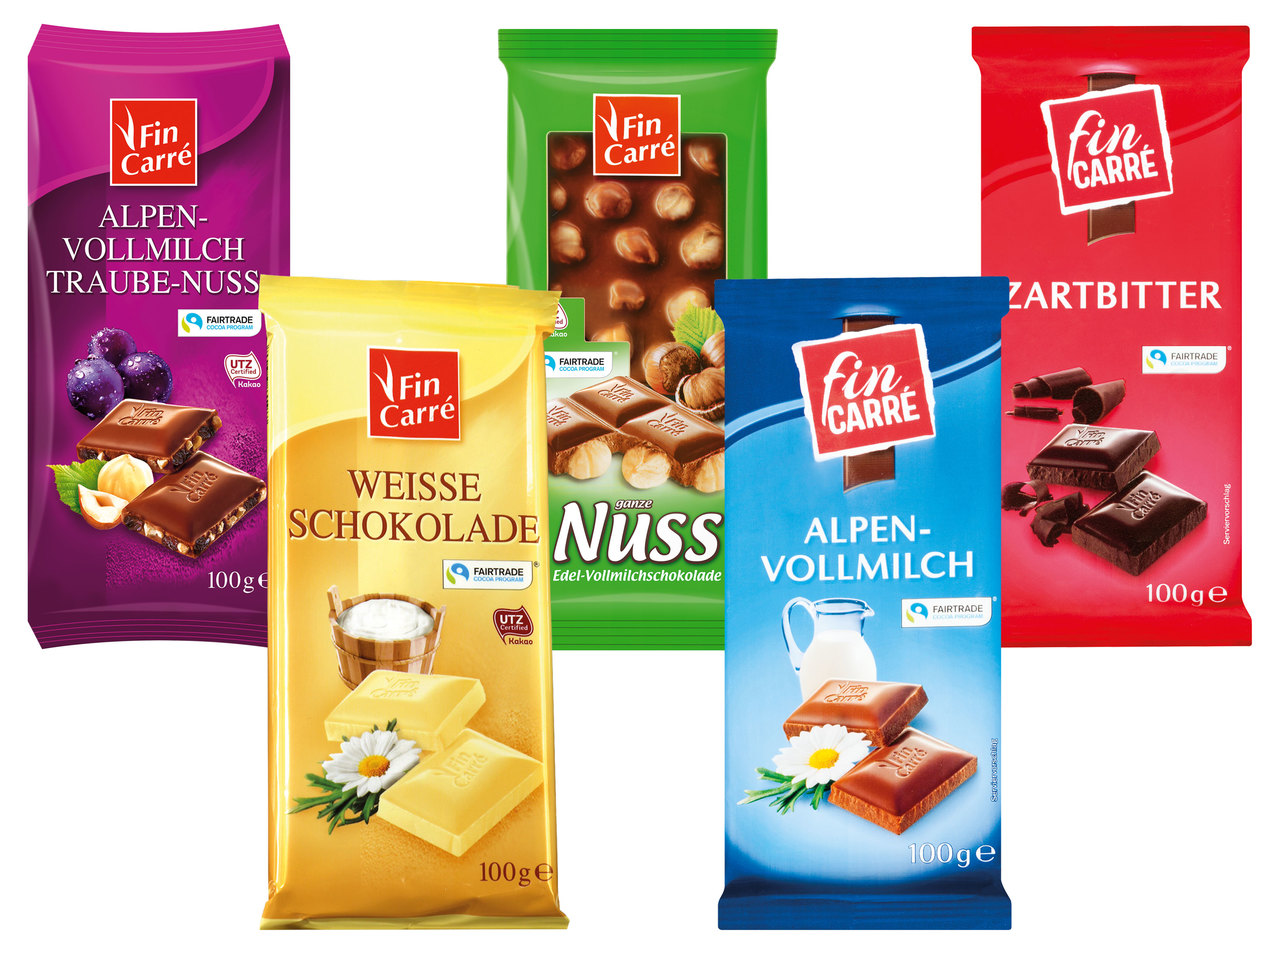 FIN CARRÉ Alpenvollmilch-Schokolade